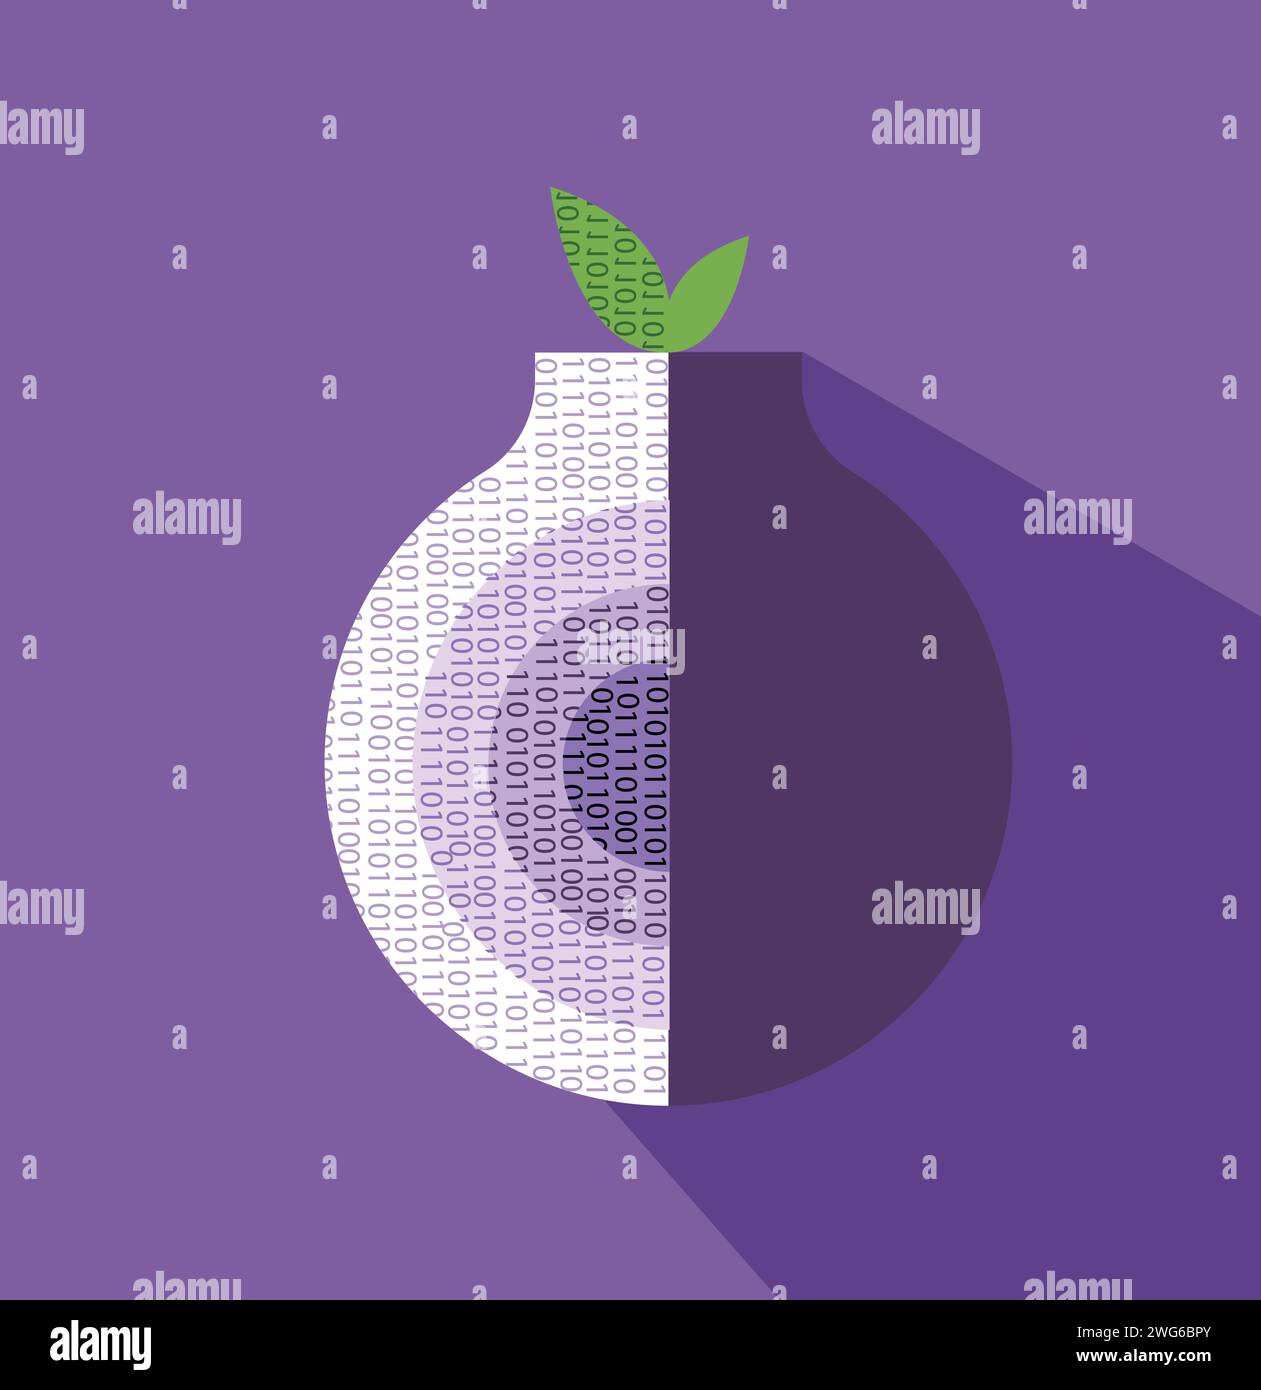 Illustrazione del browser del sito Web Onion tor deep Illustrazione Vettoriale